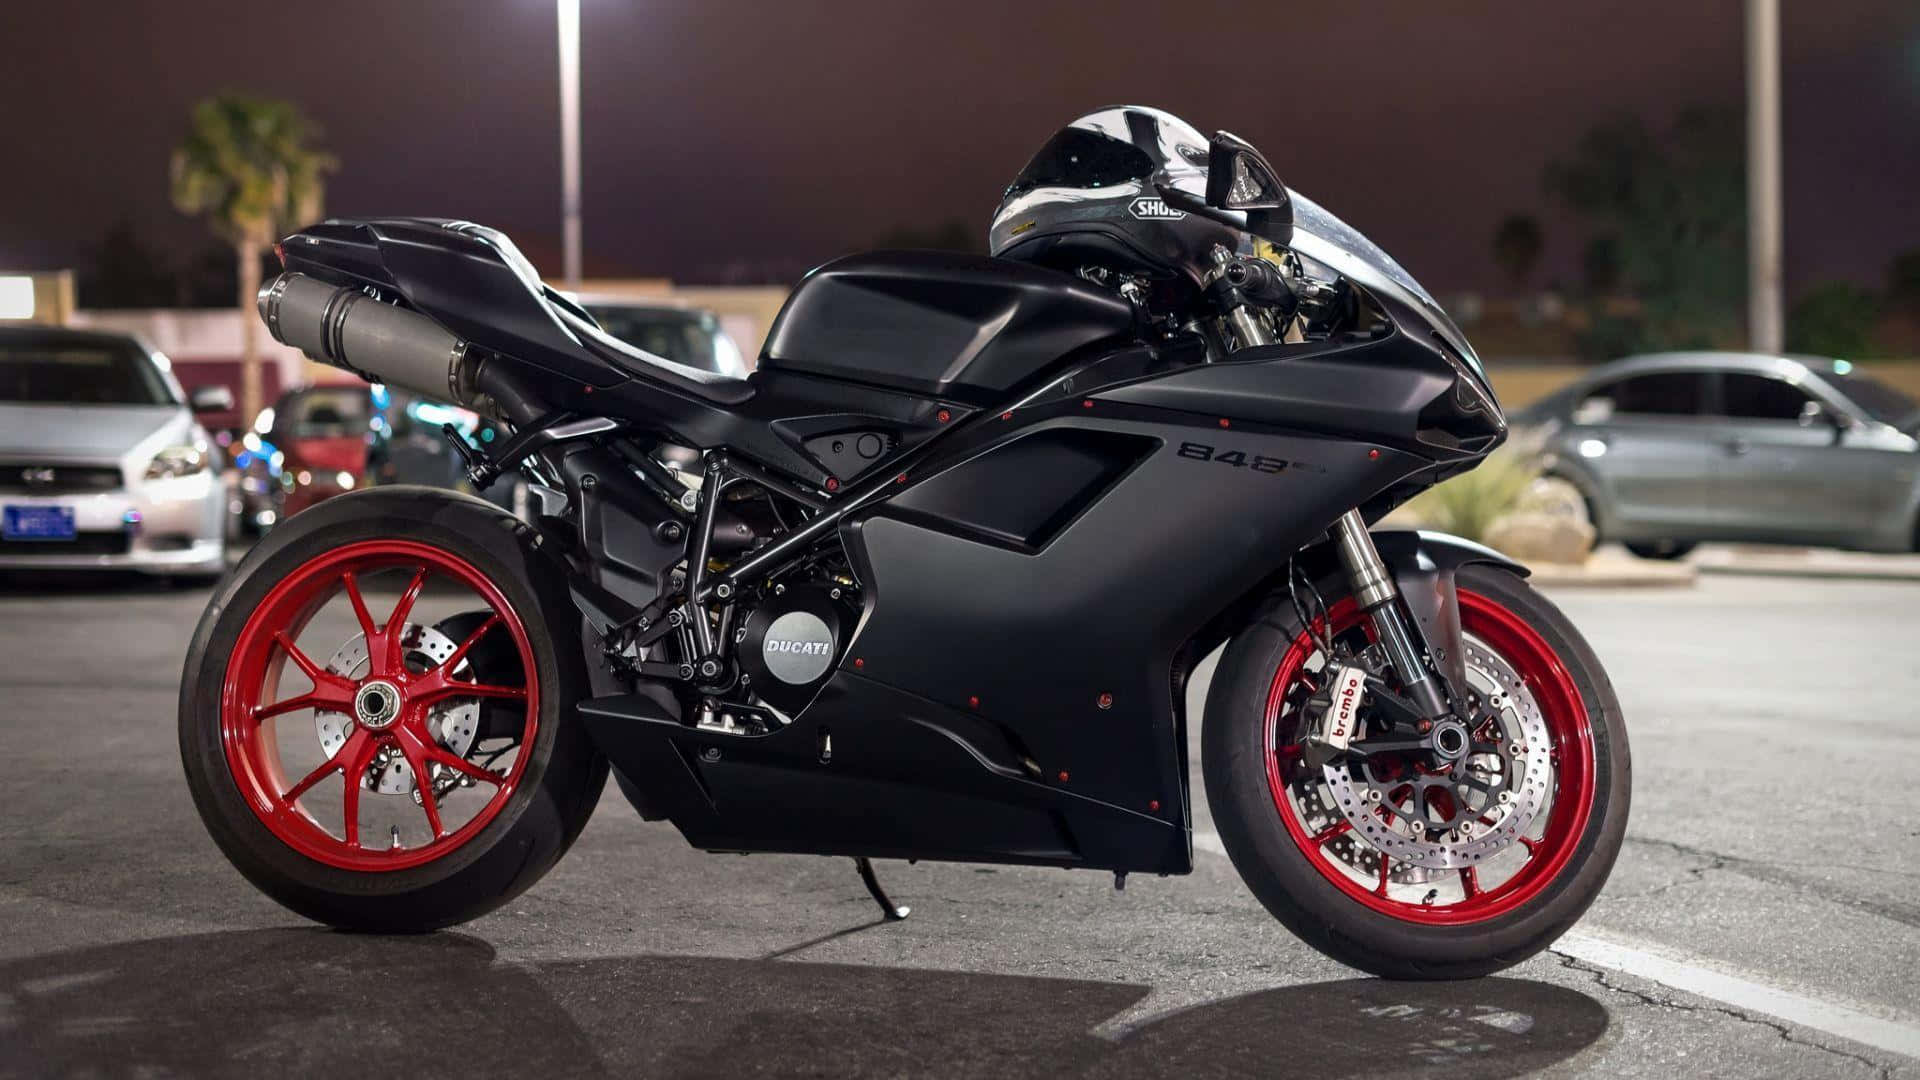 Ansprechenderhintergrund Mit Dem Ducati 848 Motorrad.